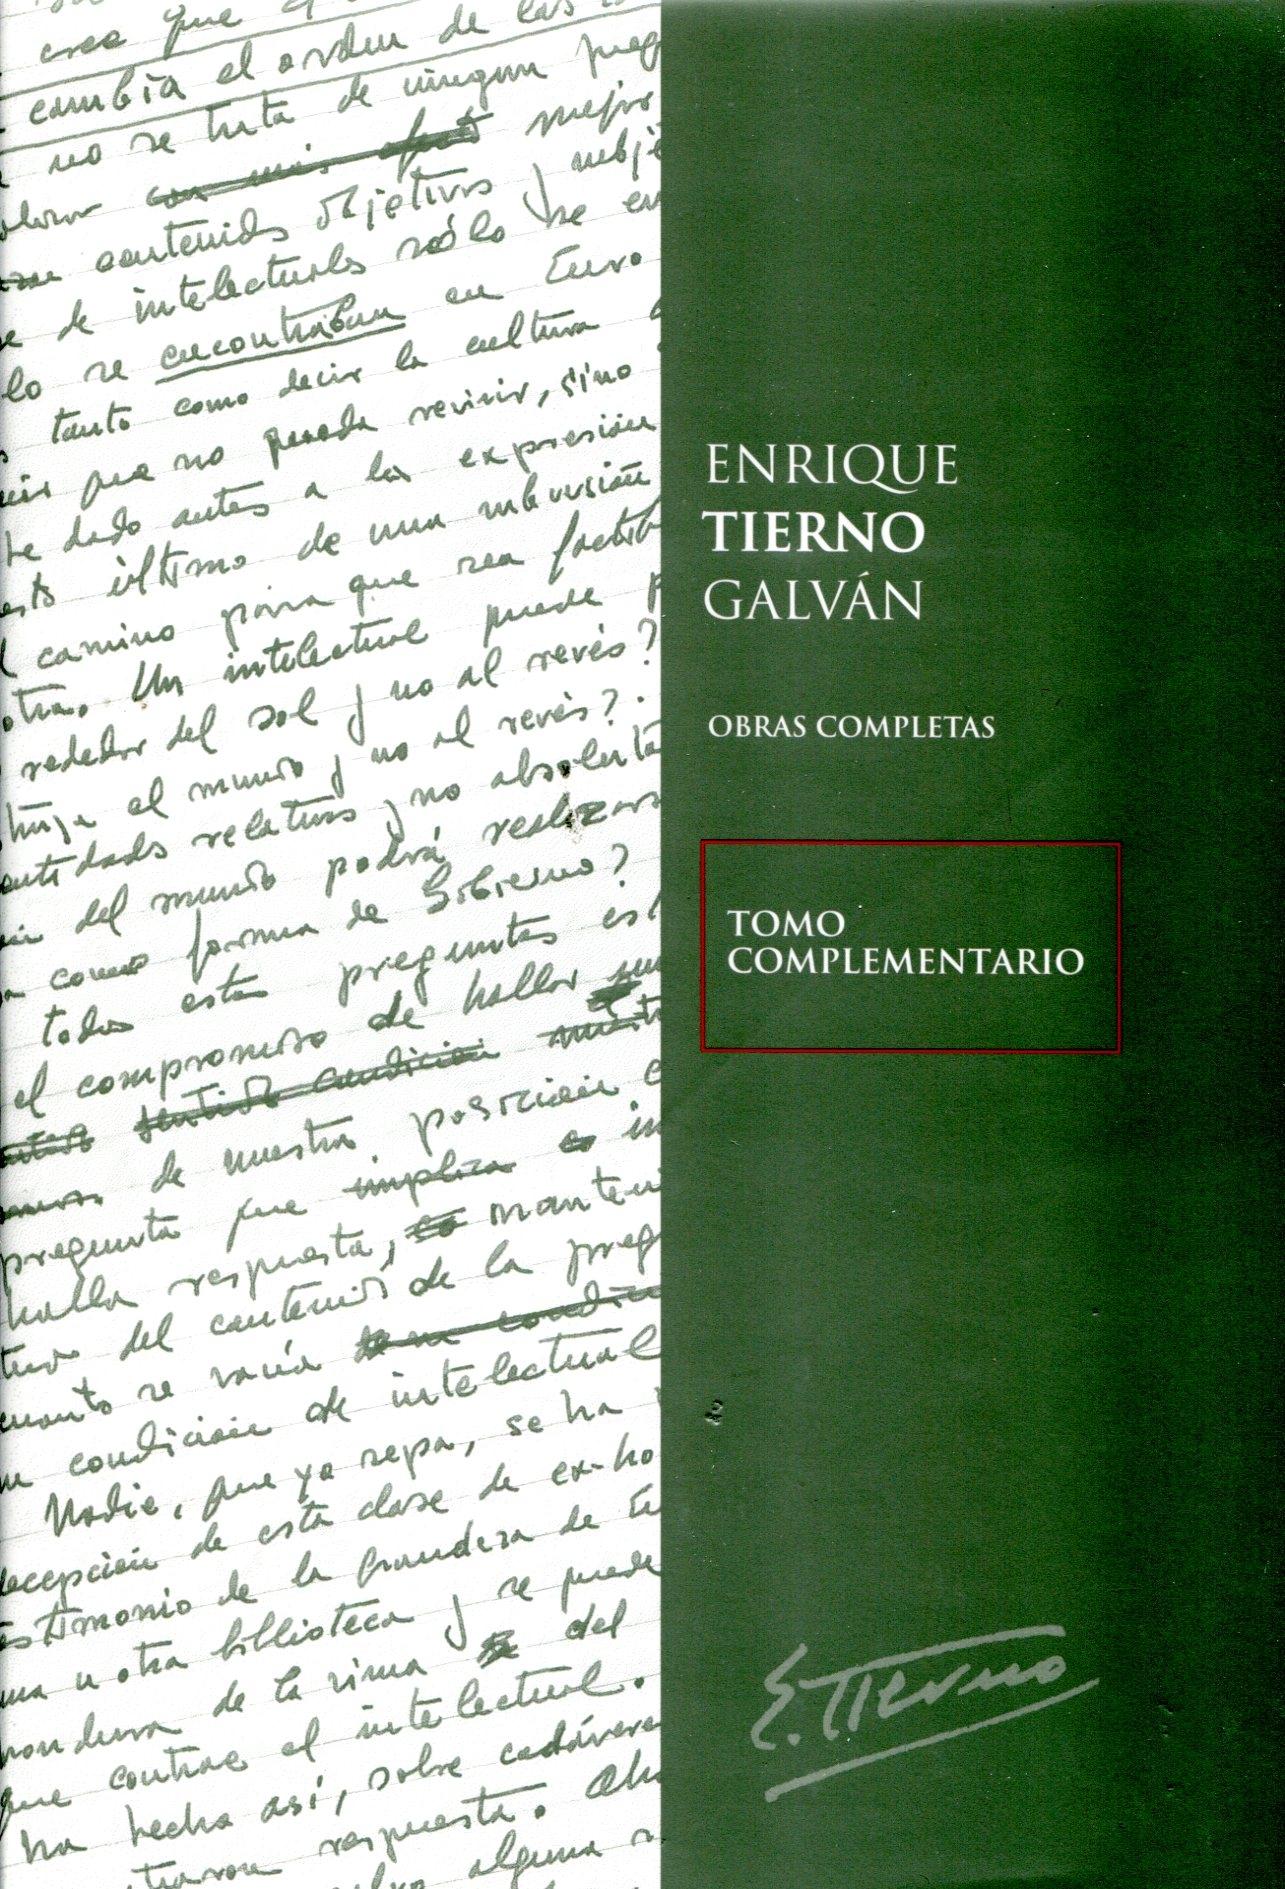 Enrique Tierno Galván. Obras completas. "Tomo complementario"